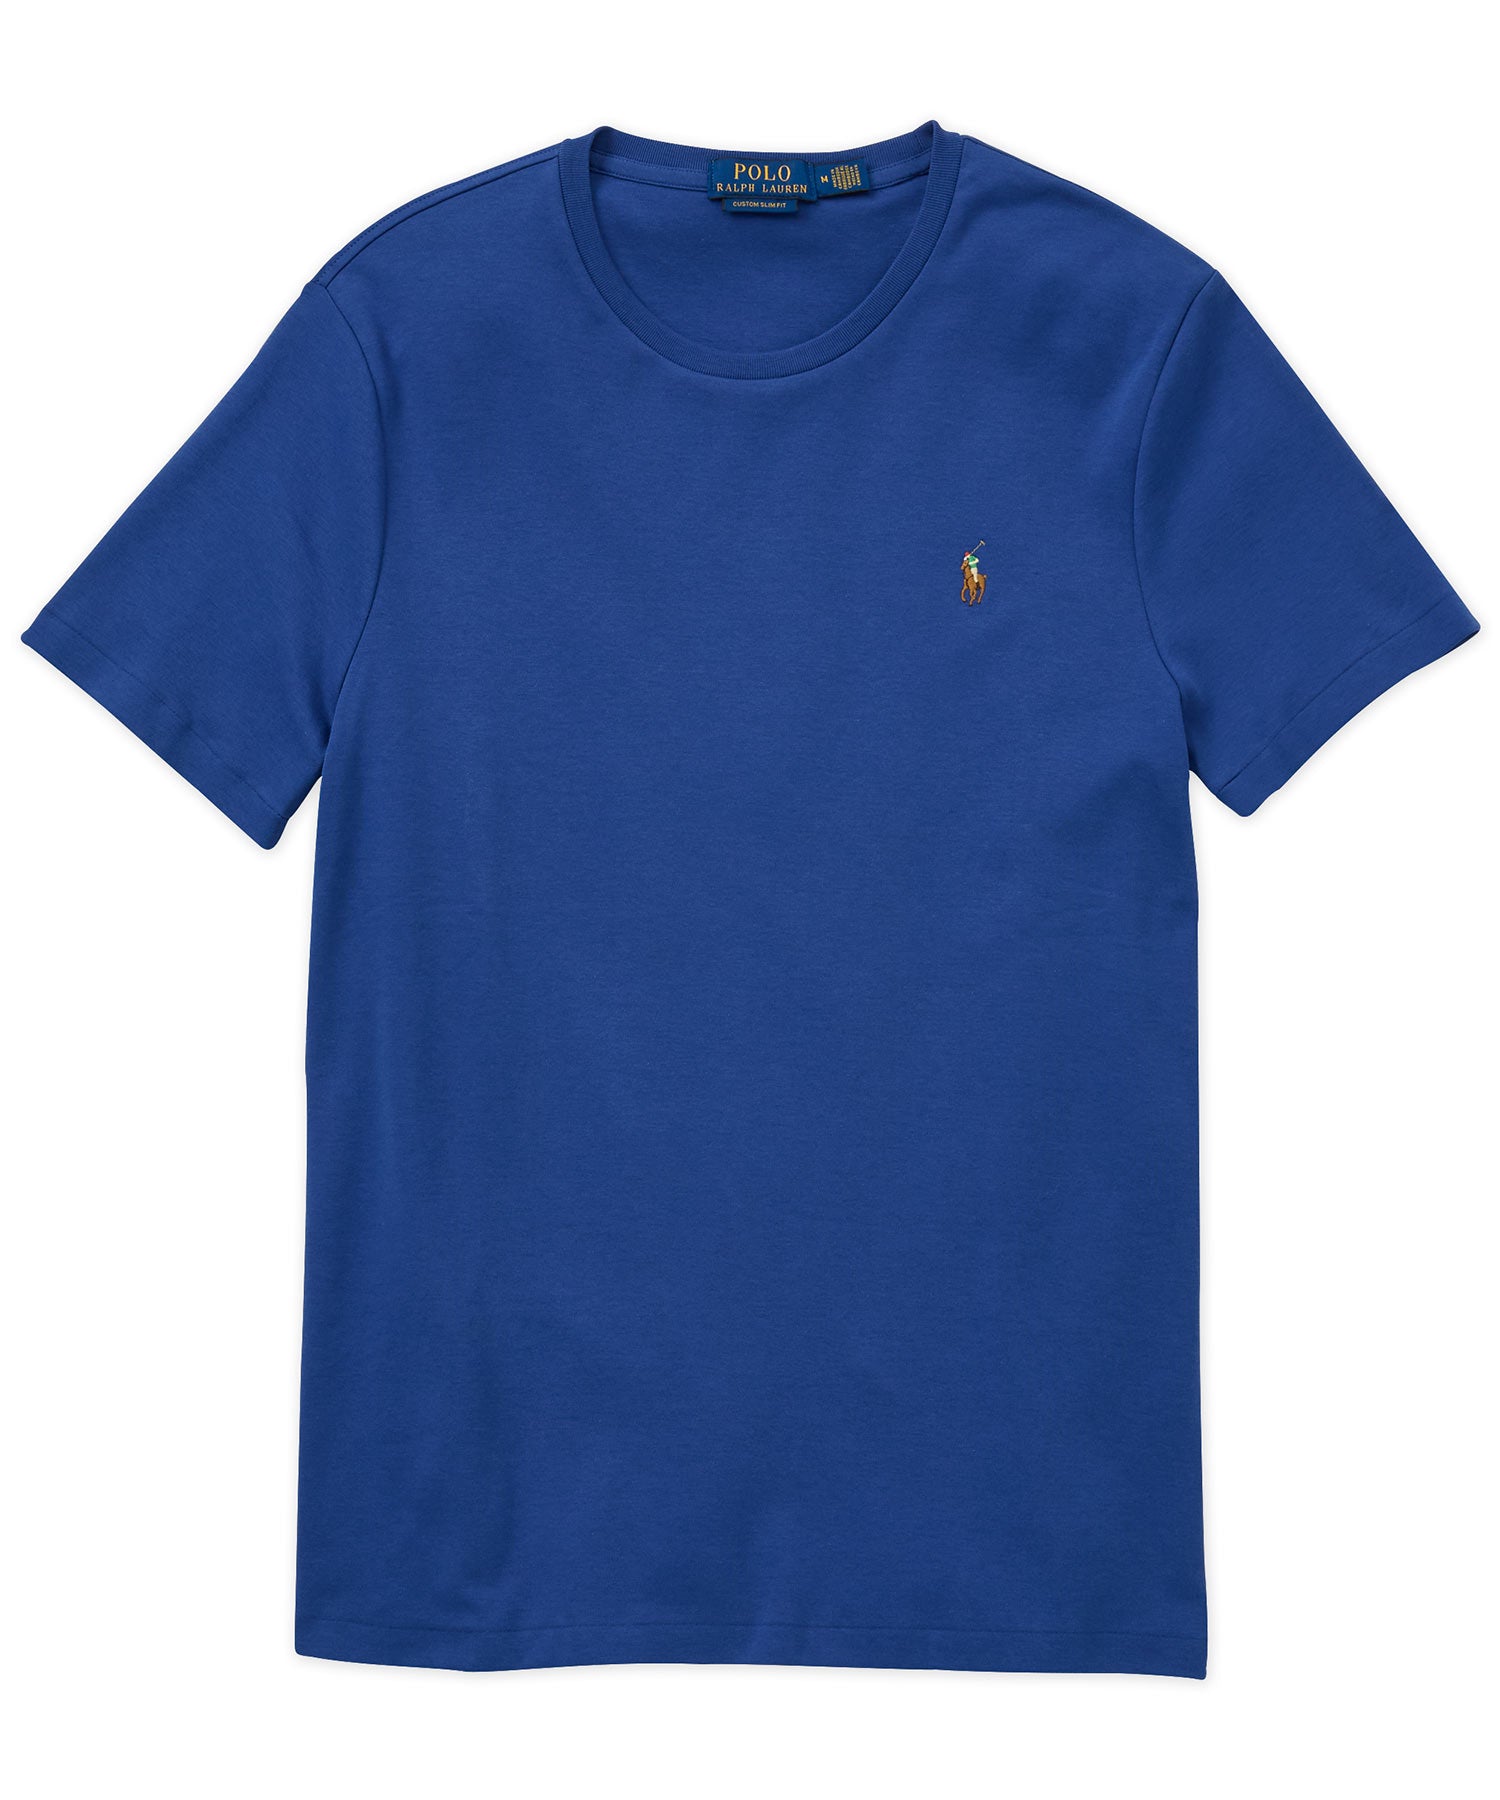 Polo Ralph Lauren Short Sleeve Soft Touch Cotton T-Shirt, Men's Big & Tall